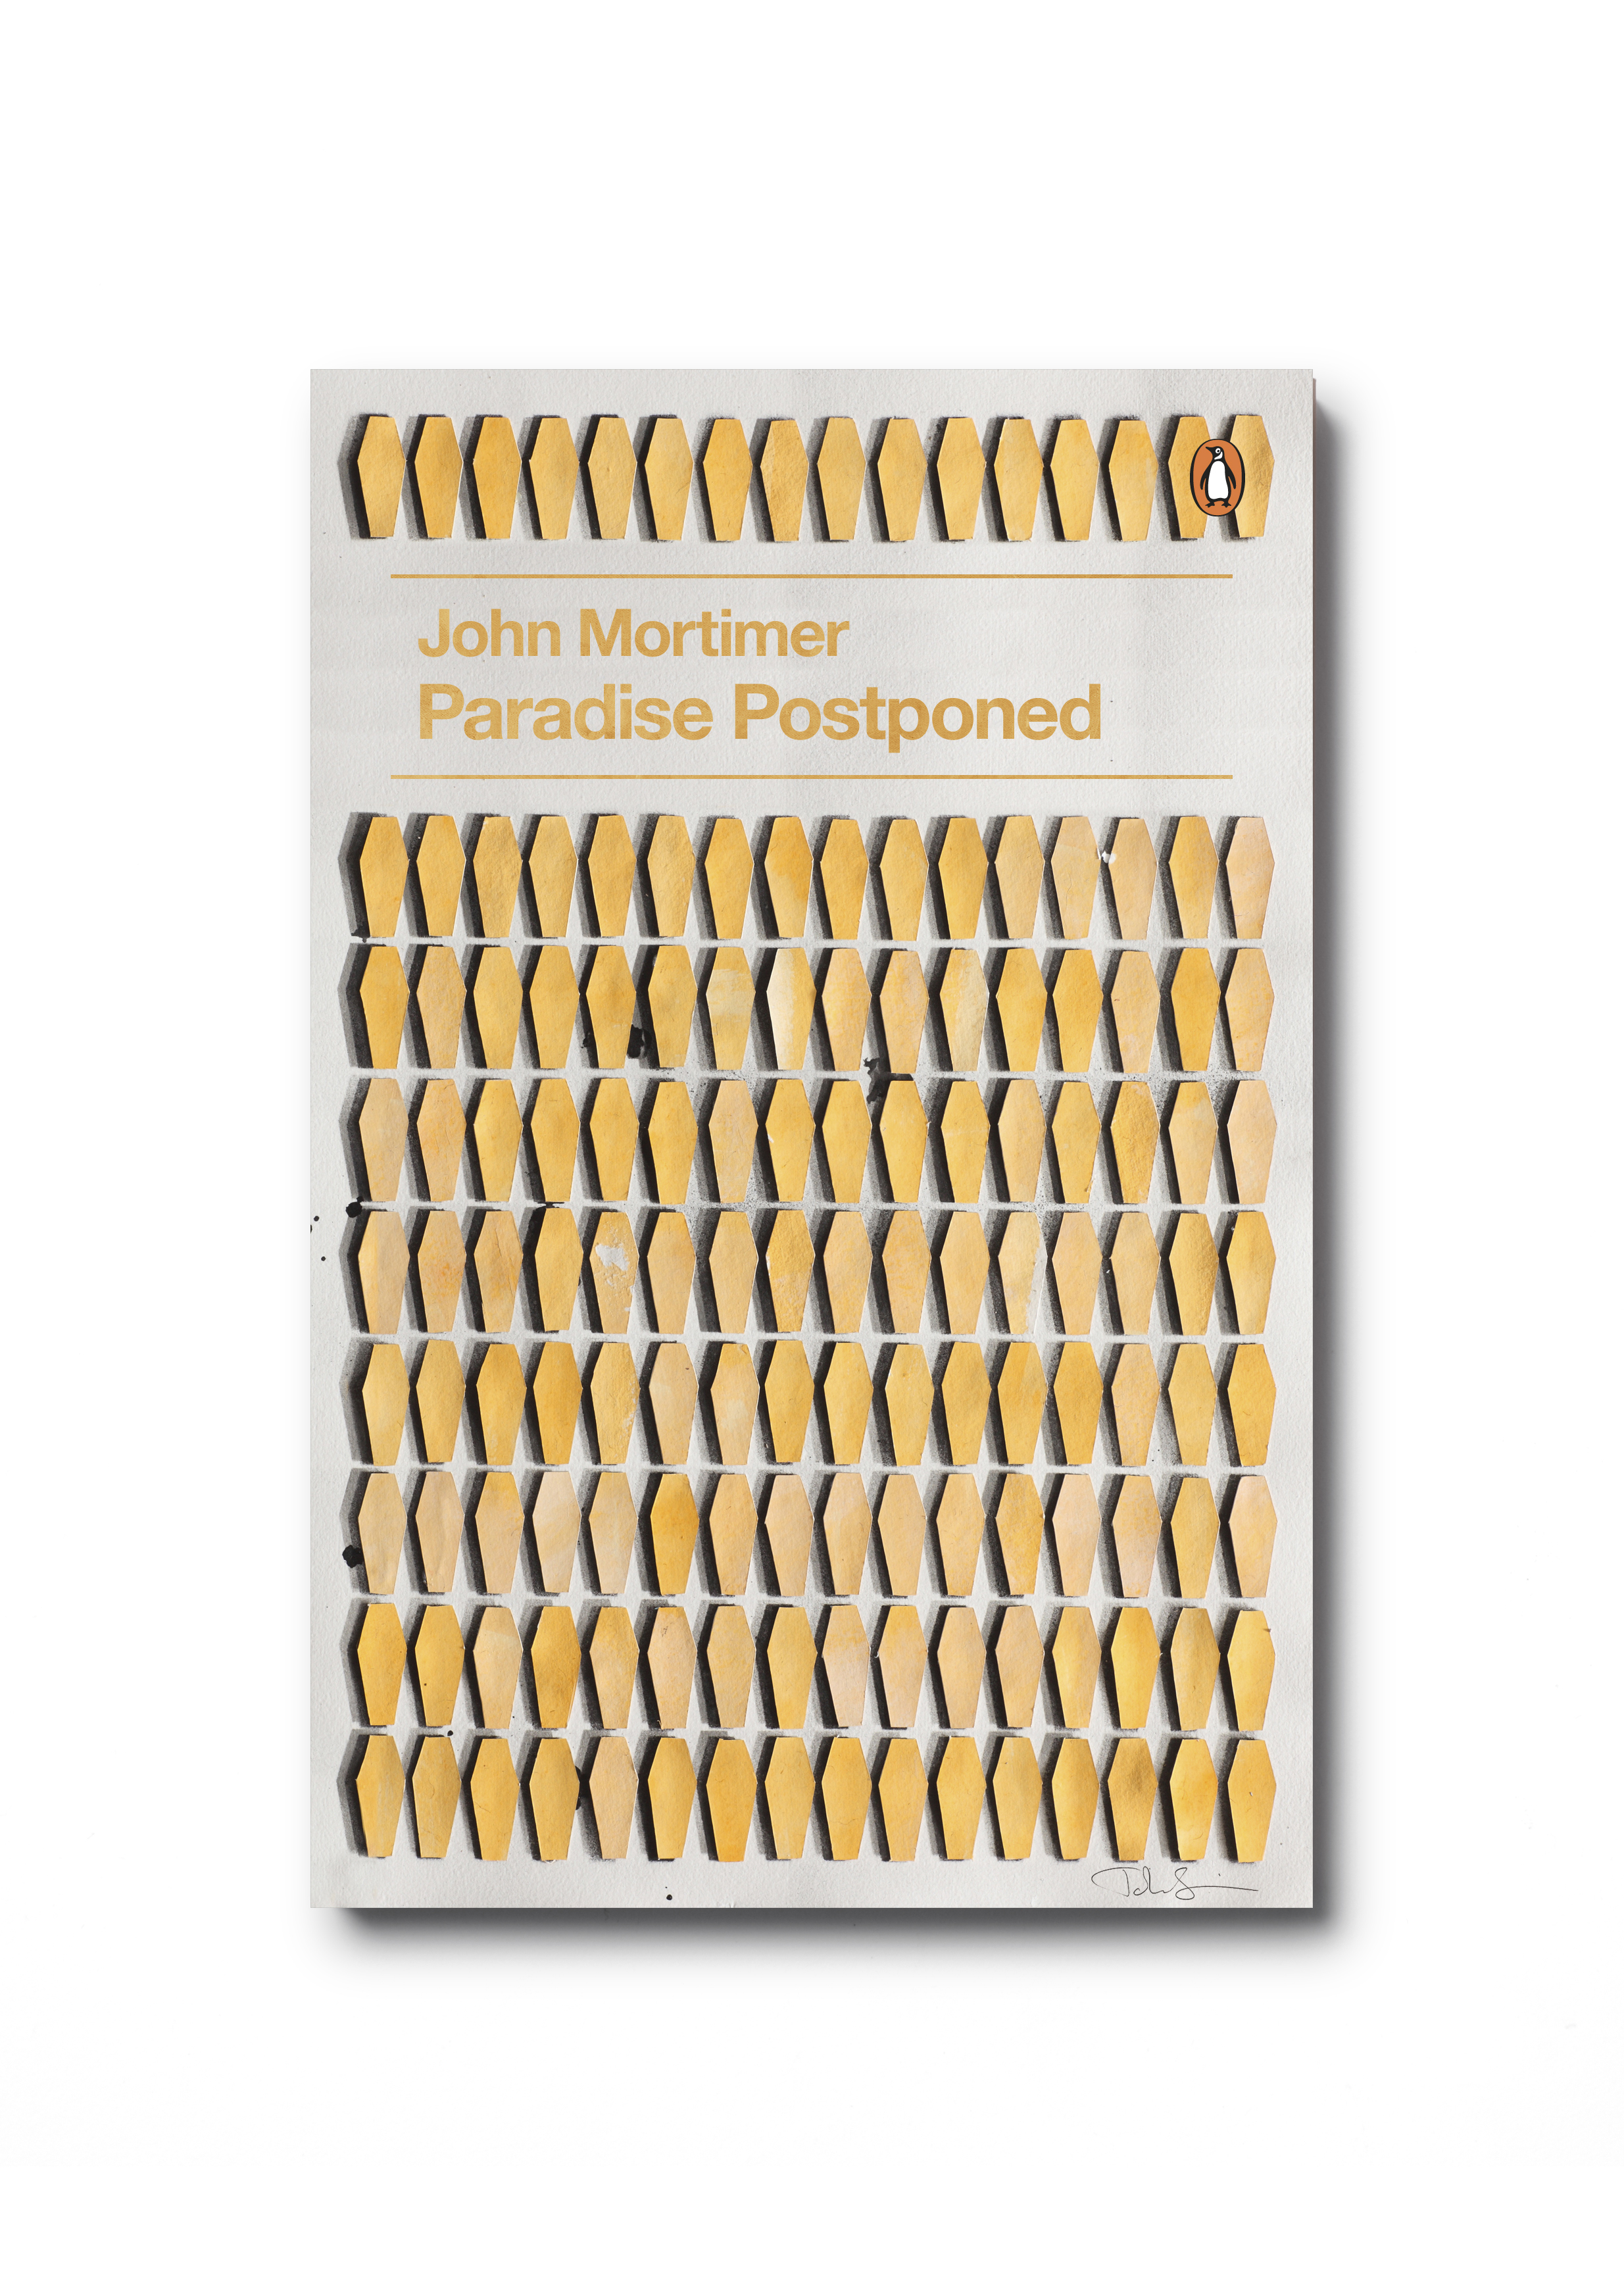    Paradise Postponed by John Mortimer&nbsp; (Penguin Decades series) - Art: John Squire Design: Jim Stoddart  &nbsp; 